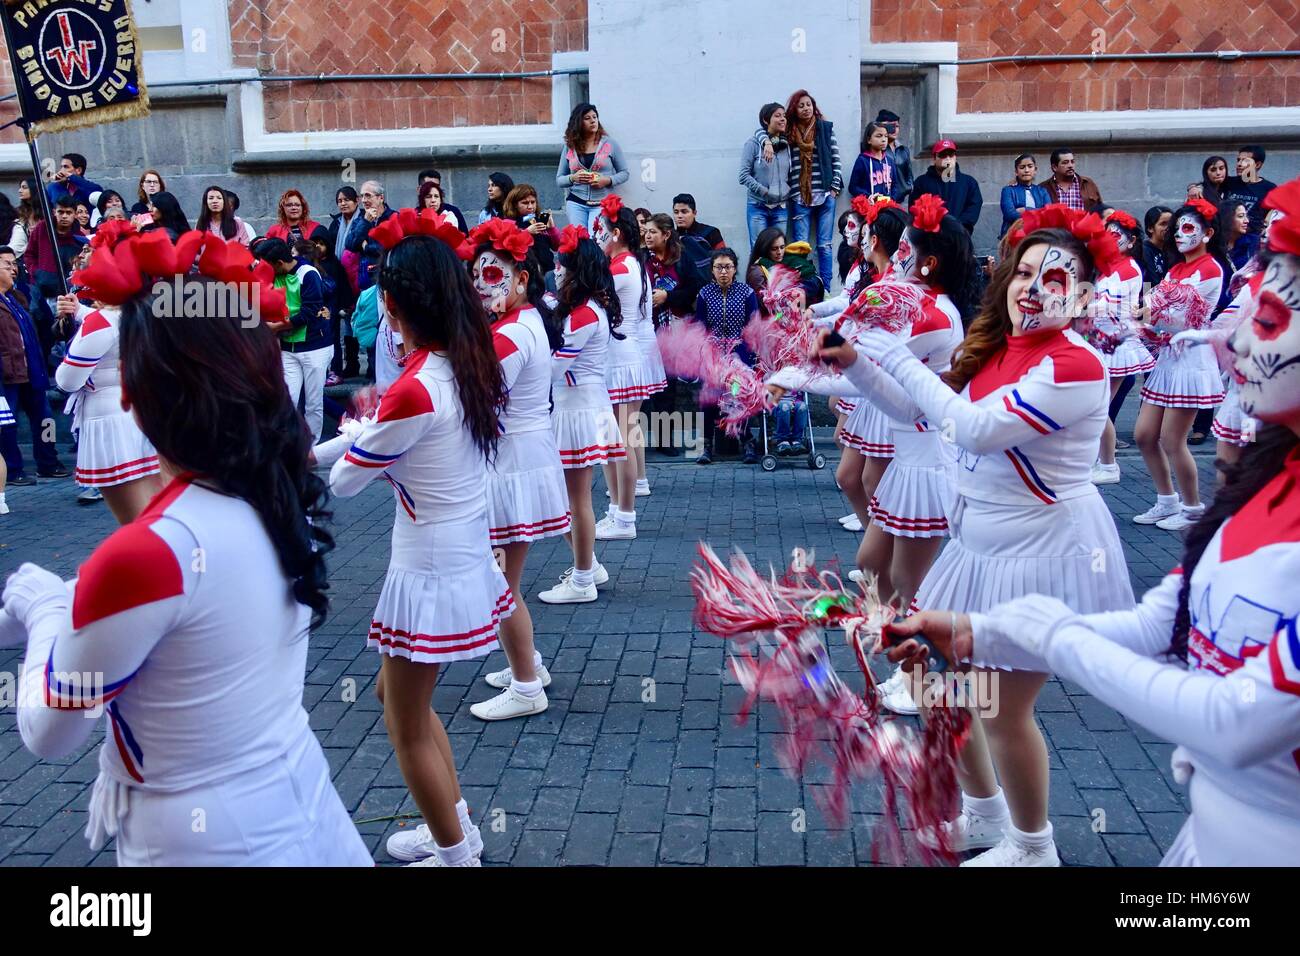 Día de los Muertos, Mexican Day of the Dead, cheerleaders, dancers, celebration and parade, Puebla, Mexico Stock Photo